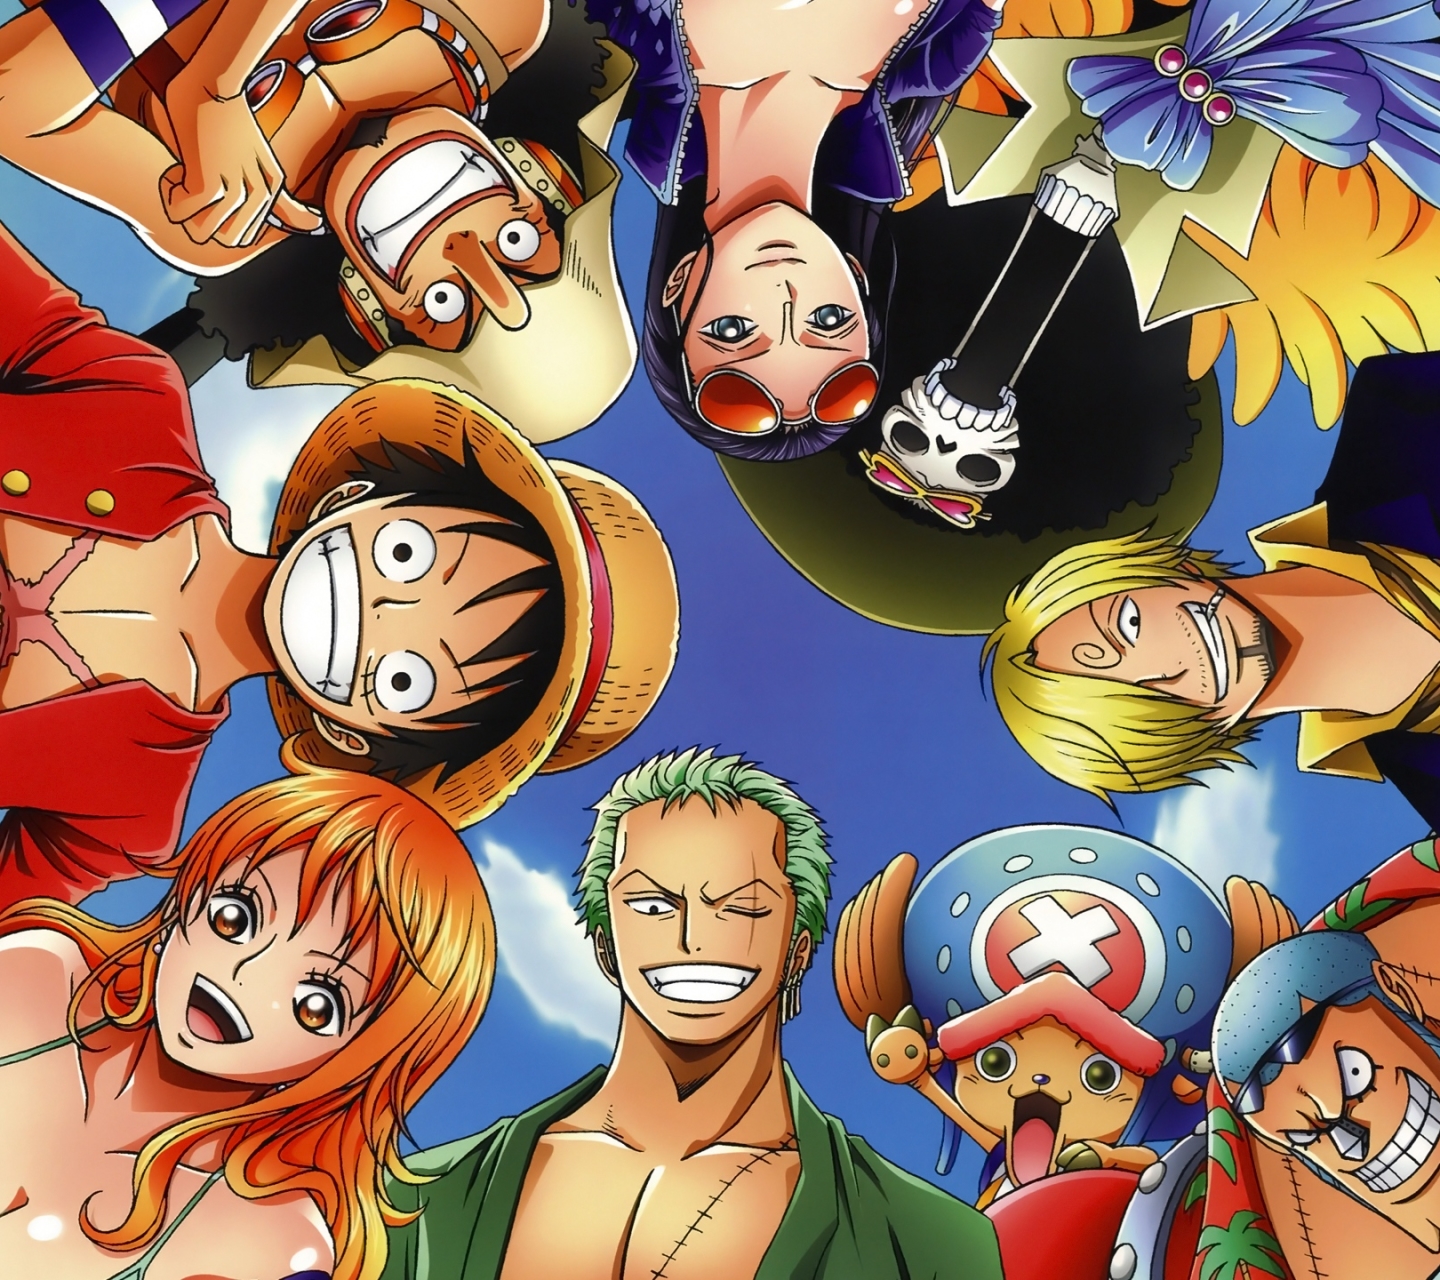 Free download wallpaper Anime, One Piece, Tony Tony Chopper, Usopp (One Piece), Roronoa Zoro, Monkey D Luffy, Nami (One Piece), Sanji (One Piece), Brook (One Piece), Nico Robin, Franky (One Piece) on your PC desktop